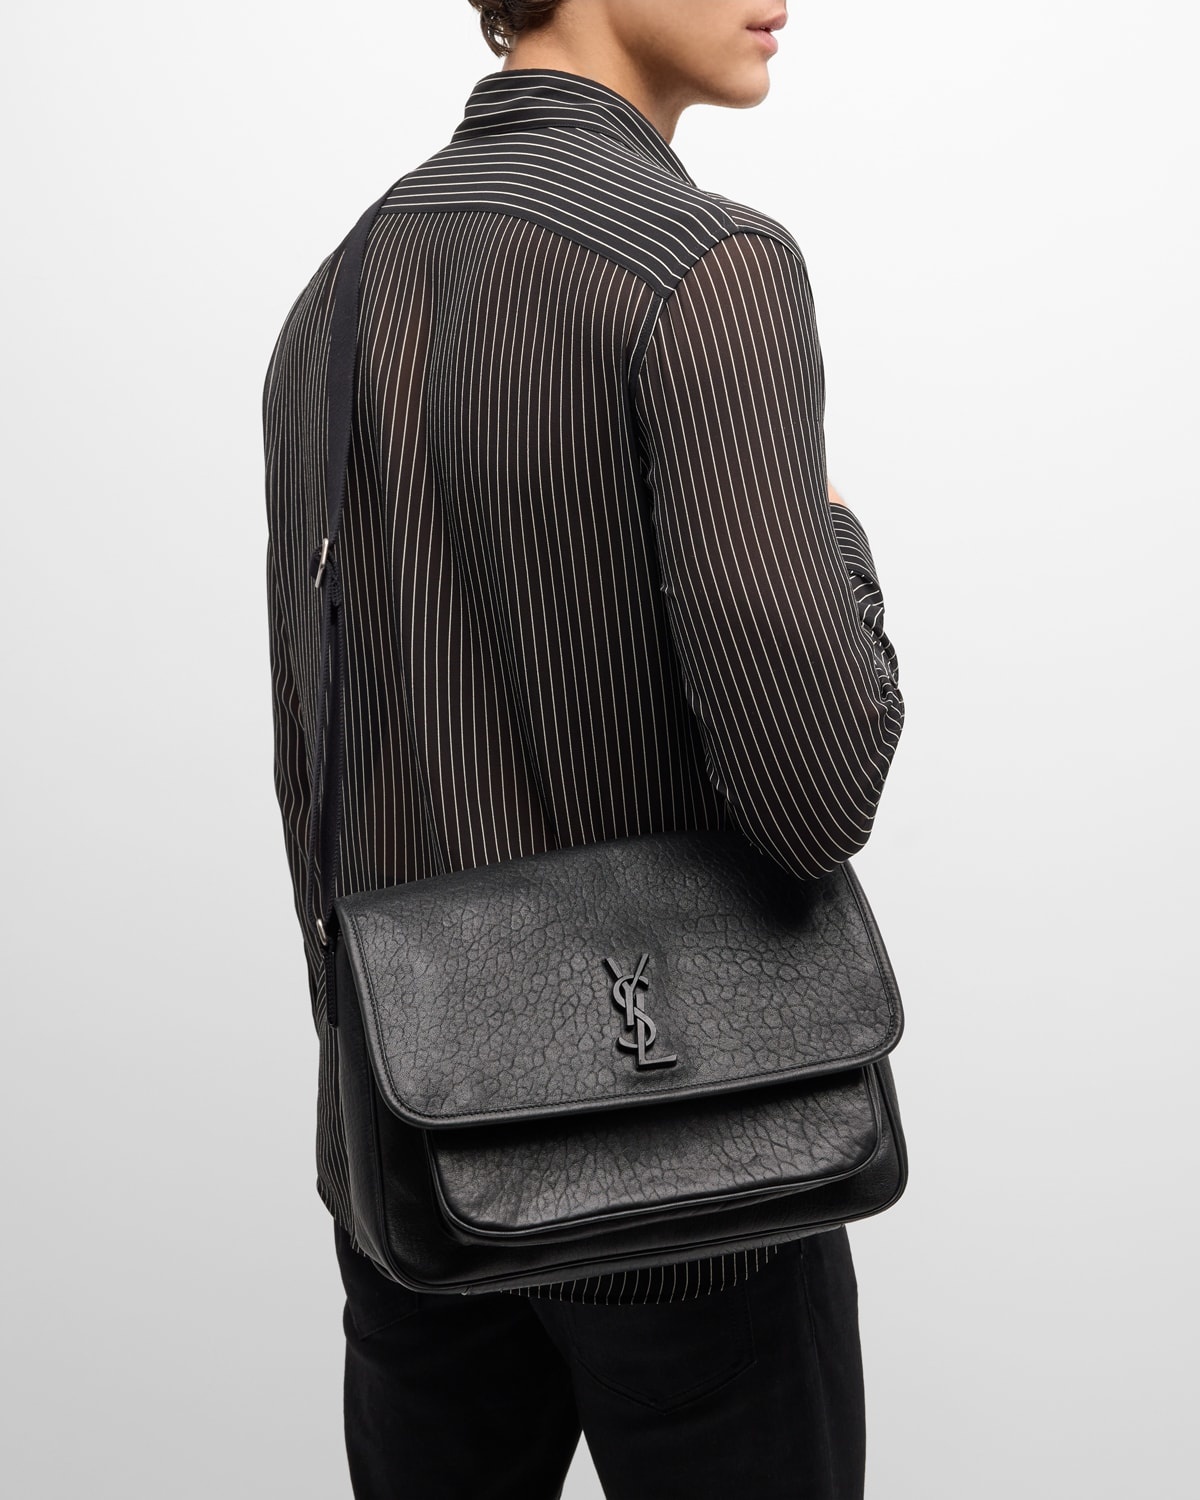 Men's Niki YSL Messenger Bag in Grained Leather - 2